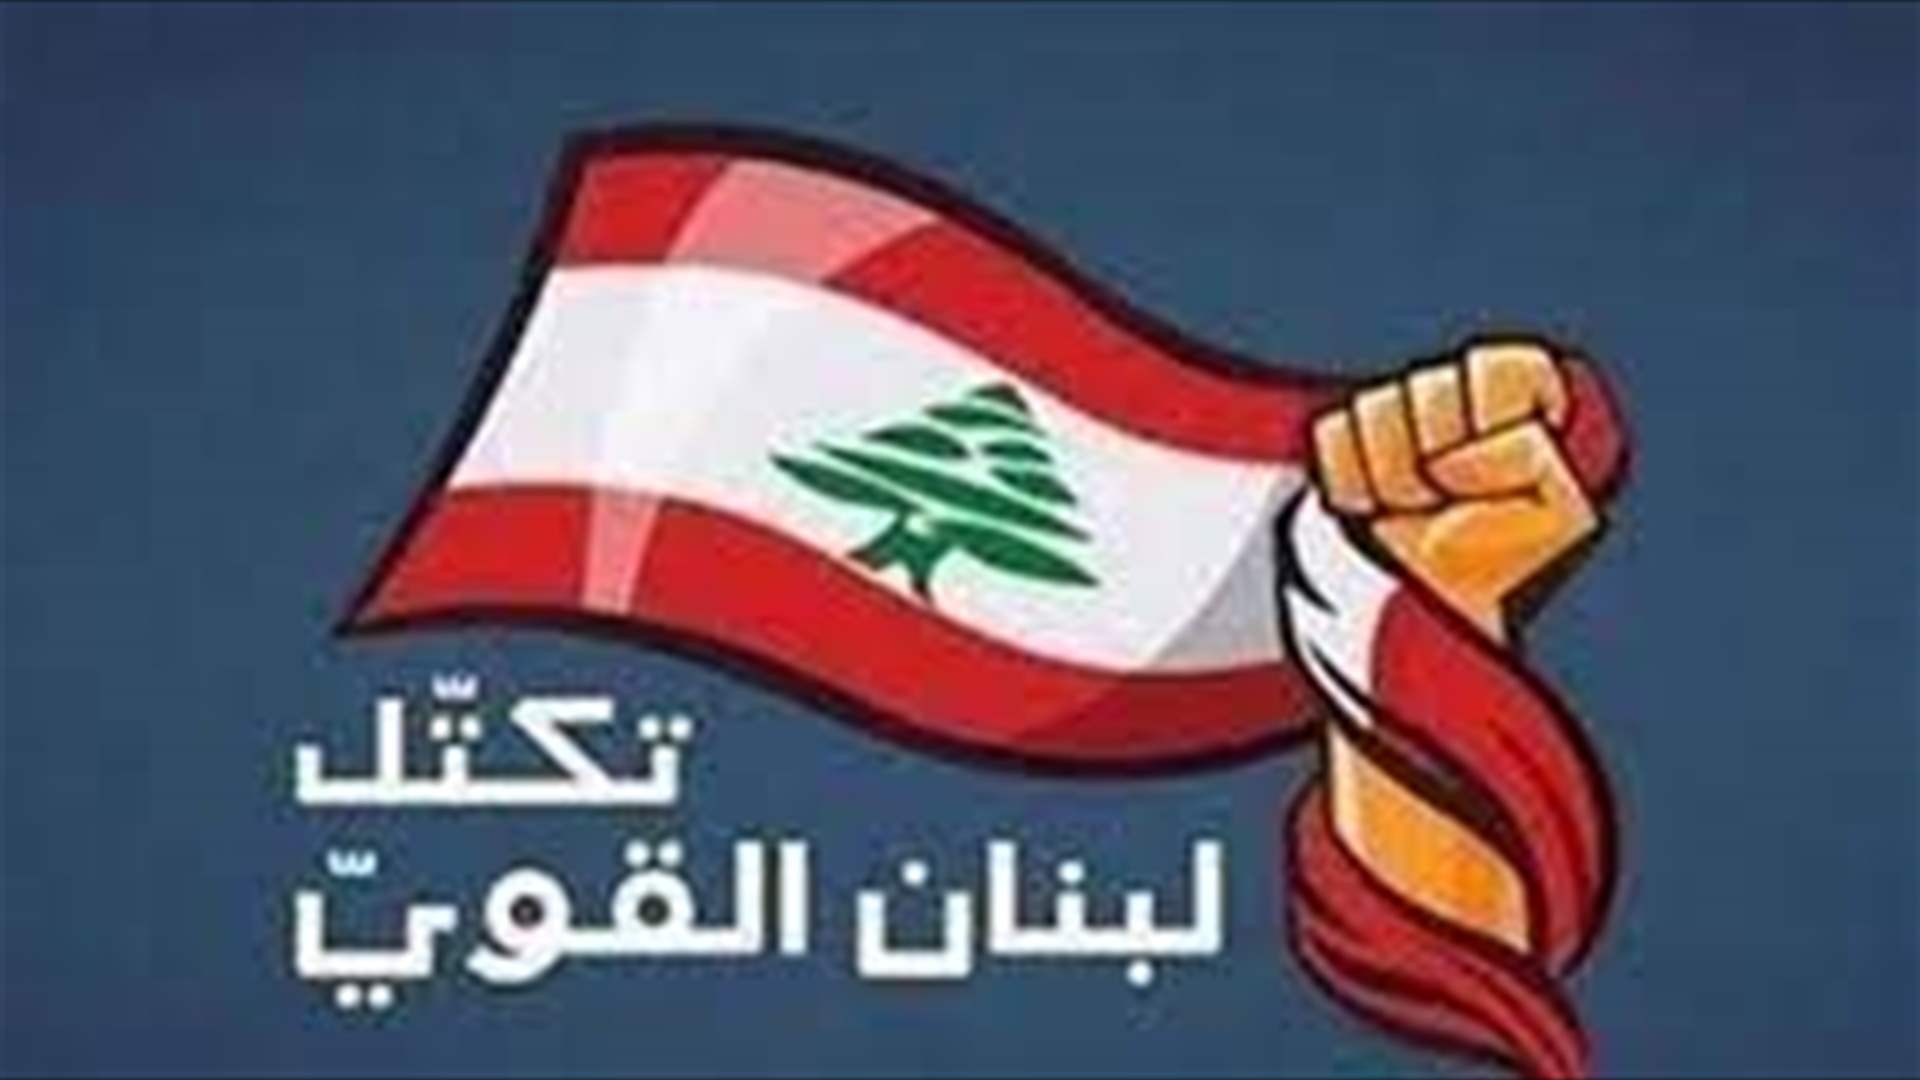  &quot;لبنان القوي&quot;: التأكيد على المسار المتفق عليه لجهة التوافق مع المعارضة على مرشح للرئاسة